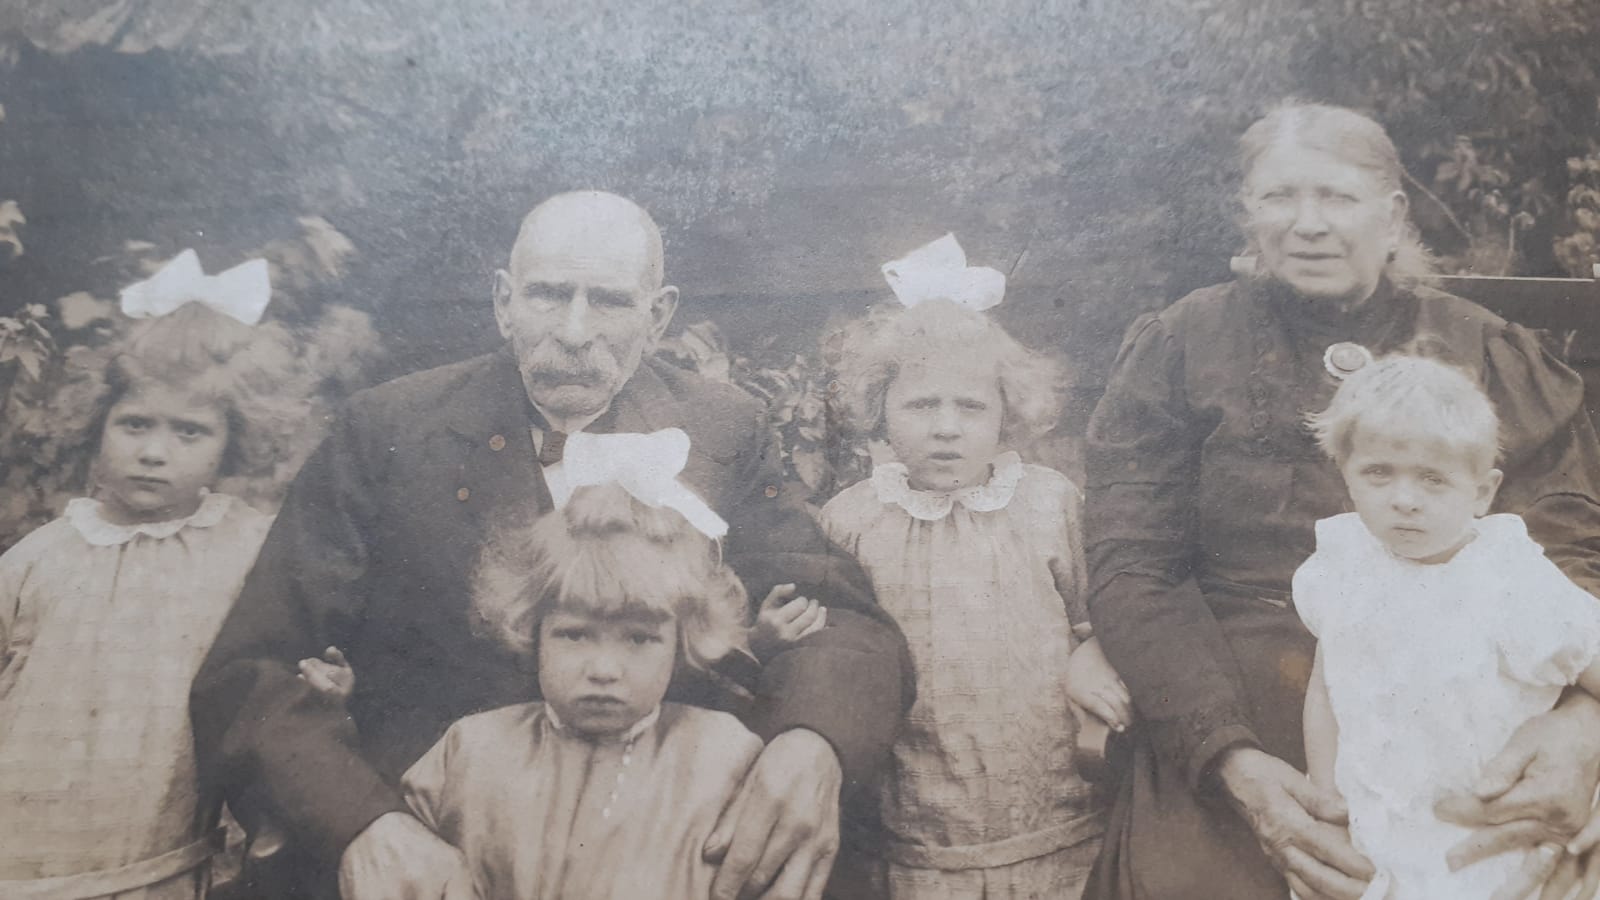 1924: Petrus <B>Tabbers</B>, Maria Johanna <B>Peppenster</B> en hun kleindochter <A HREF="https://koenvansantvoord.nl/kwartierstaat/index.php?kwst=bothboomsma&num=15&gen=1#nr15"><U>Nellie <B>Tabbers</B></U></A> (voorgrond bij opa)
<BR><BR>
Meisje rechts: Corry (verhuisd naar London en gehuw. met Ed Churchouse), meisje helemaal links is Sjaan (Janneke) Tabbers (verhuisde eveneens naar London (ca. 1948/1949) en is gehuw. met James Lett, meisje tussen opa en oma in is Riet (Marieke)
<BR>
<BR>
Ze konden allen goed leren maar moesten in de crisitijd gaan werken. Uiteindelijk kreeg het echtpaar 10 kinderen.